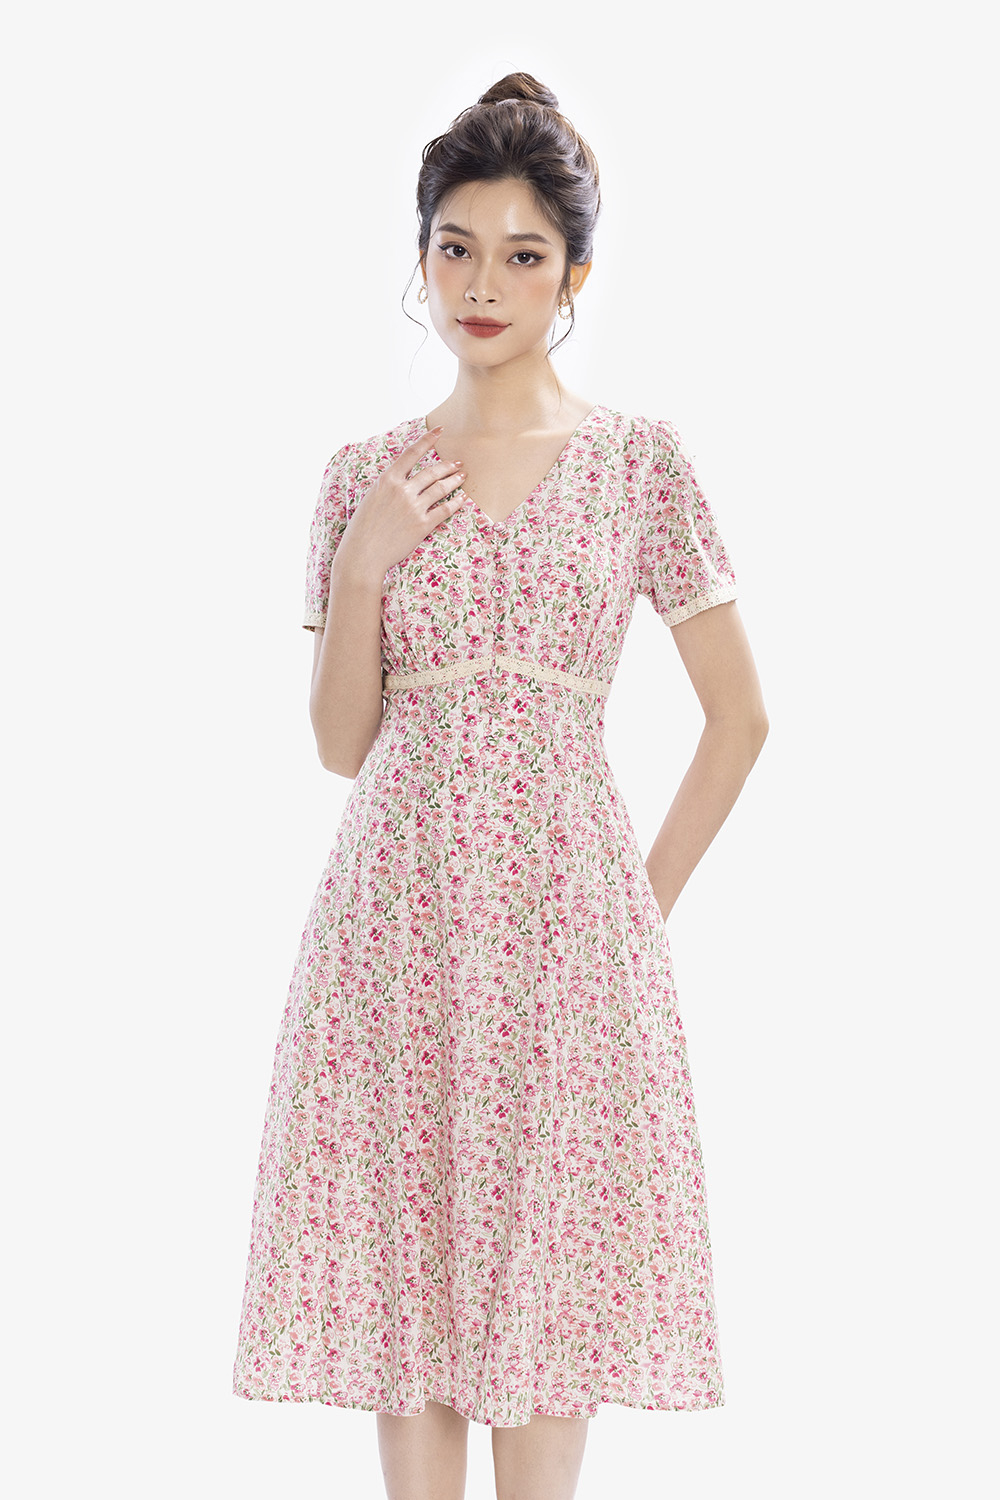 Đầm hoa nhí | đầm vintage - Nomax Thời trang thiết kế